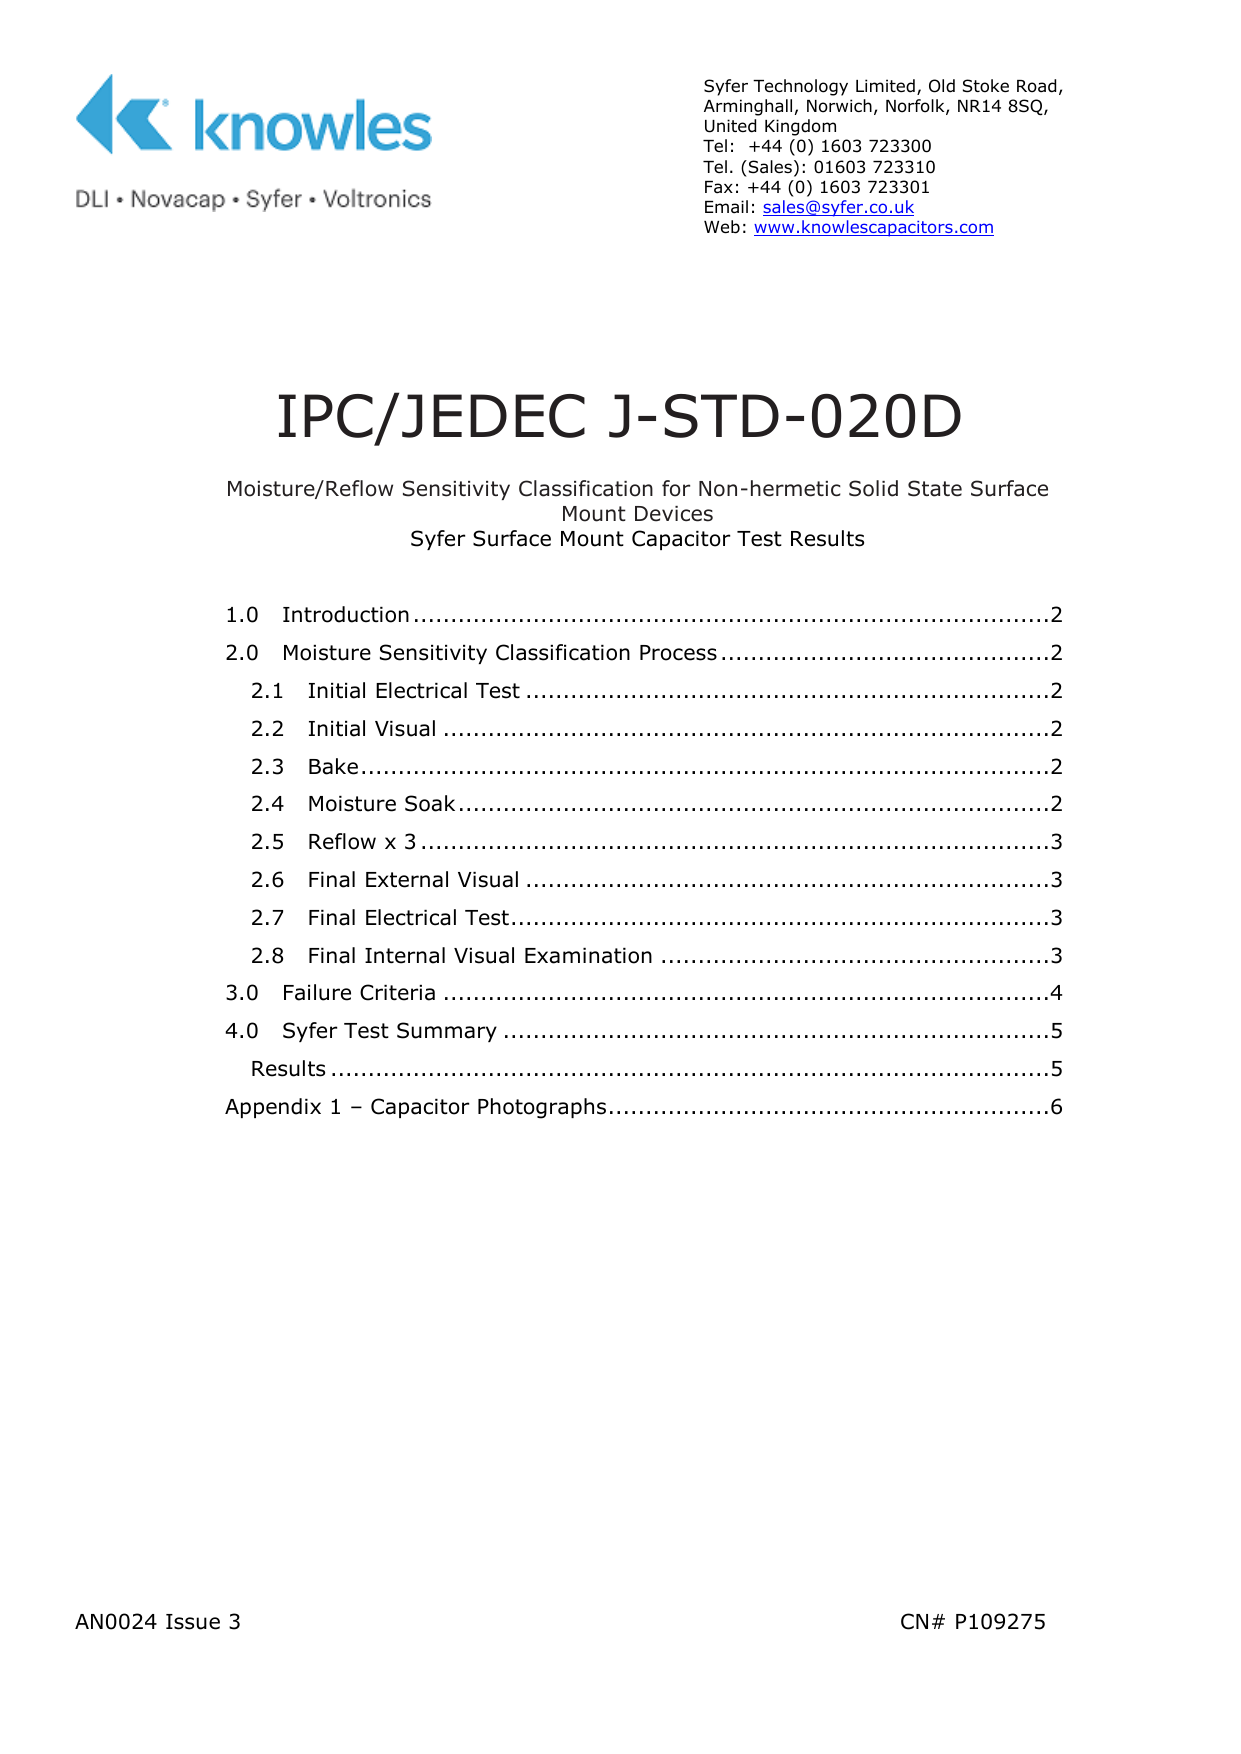 ipc j std 001g pdf free download